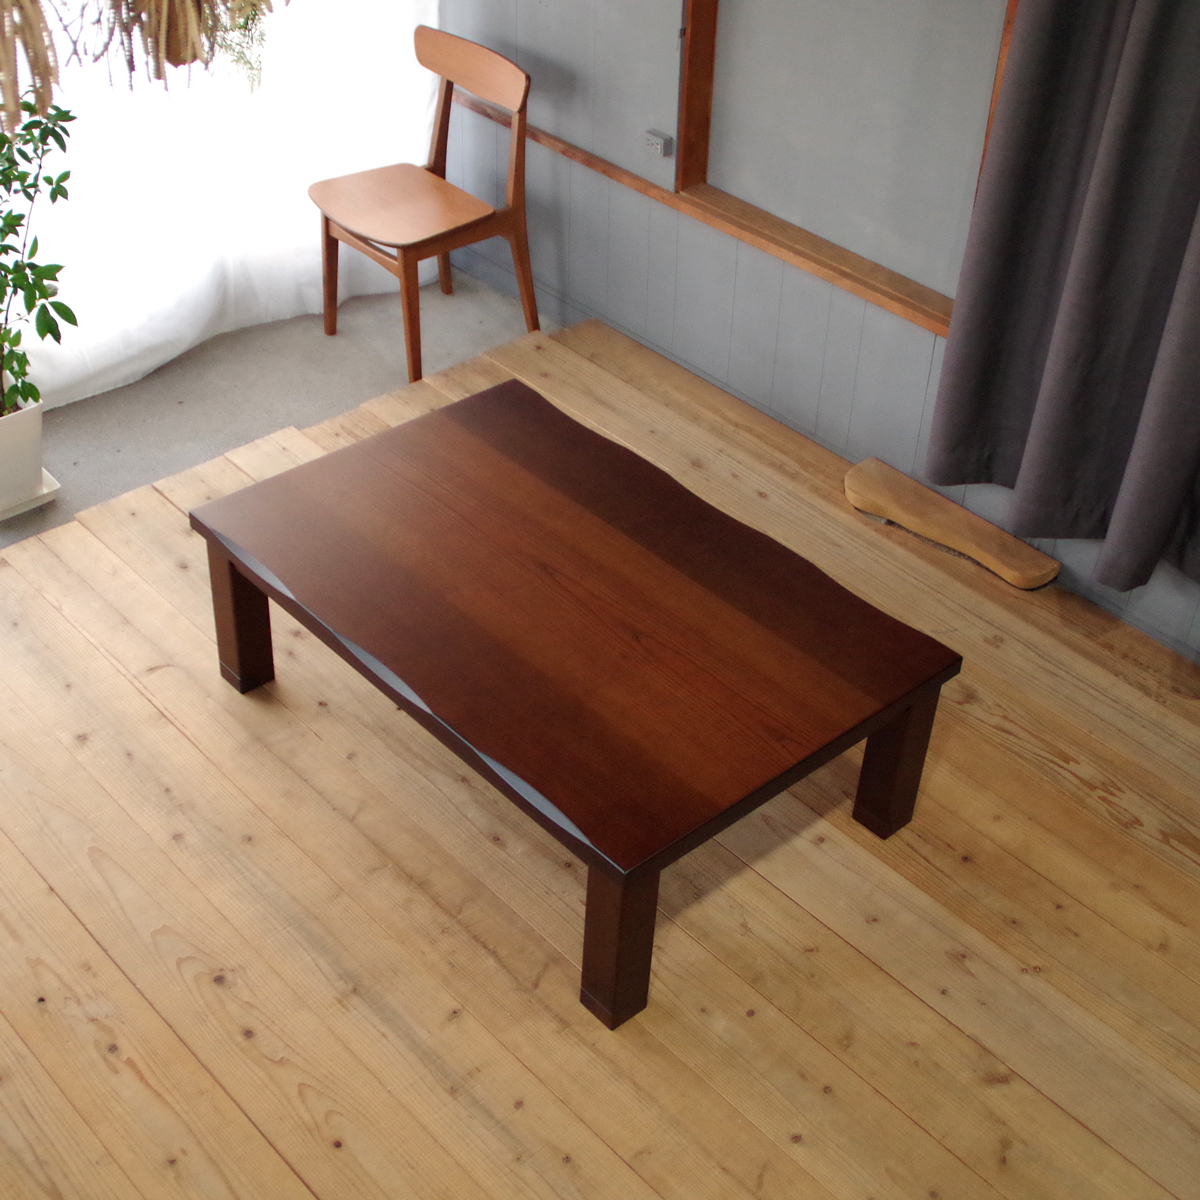 setomarche たかこがえらんだ こたつです SAZANAMI-6こたつ 120 長方形 アッシュ ブラウン 北欧 和風 贈答 モダン 国産ローテーブル シンプル 座卓 かわいい おしゃれ 円卓 机 日本製 ローテーブル 上品 デザイン